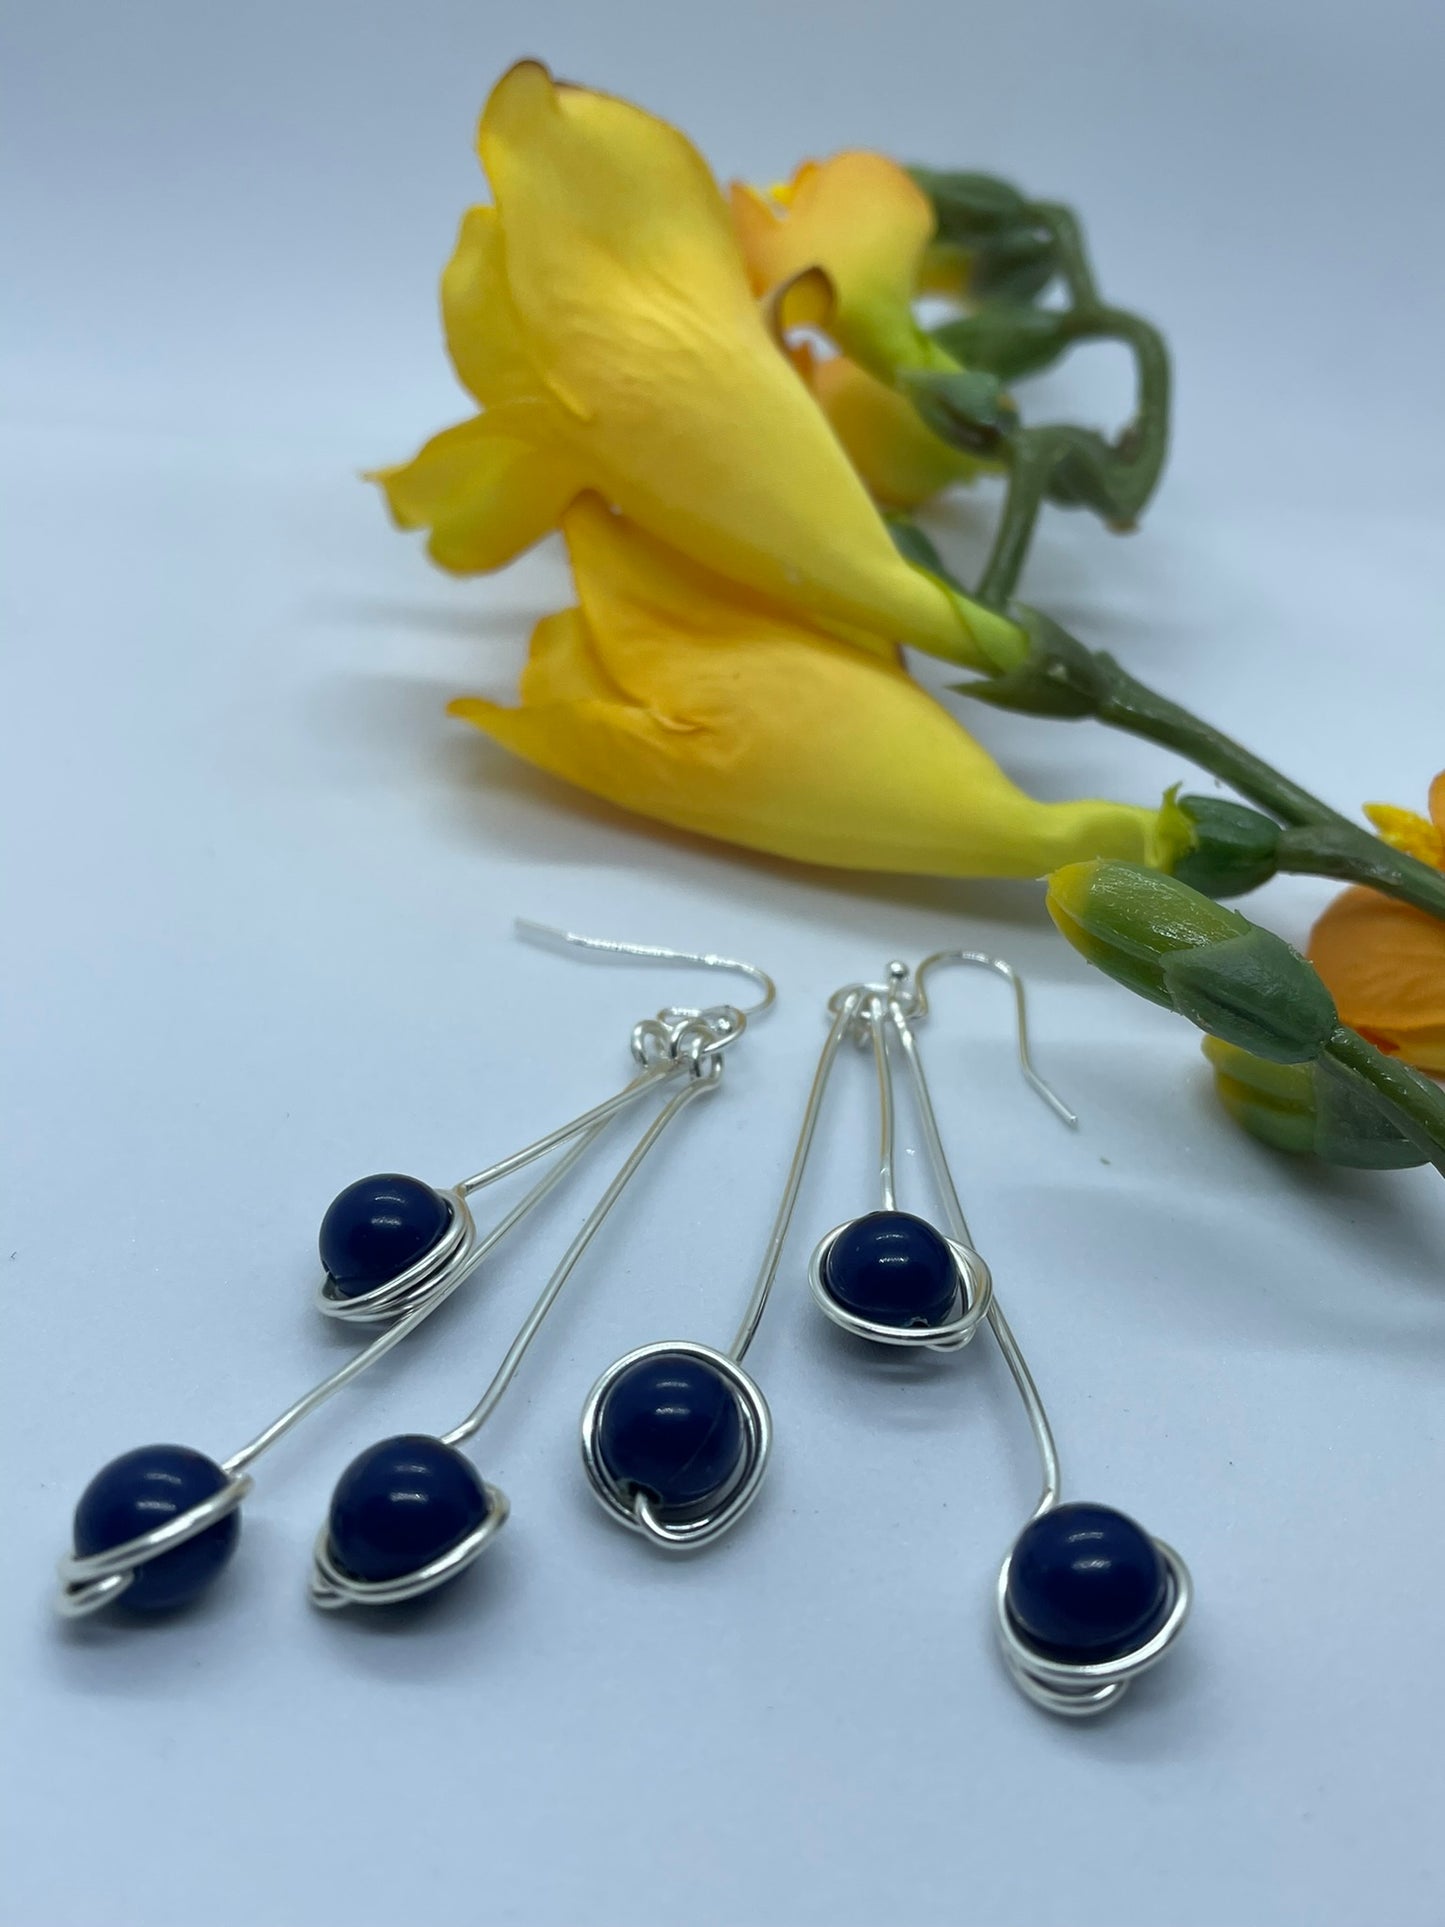 Wire & 3 blue bead earrings in silver wire